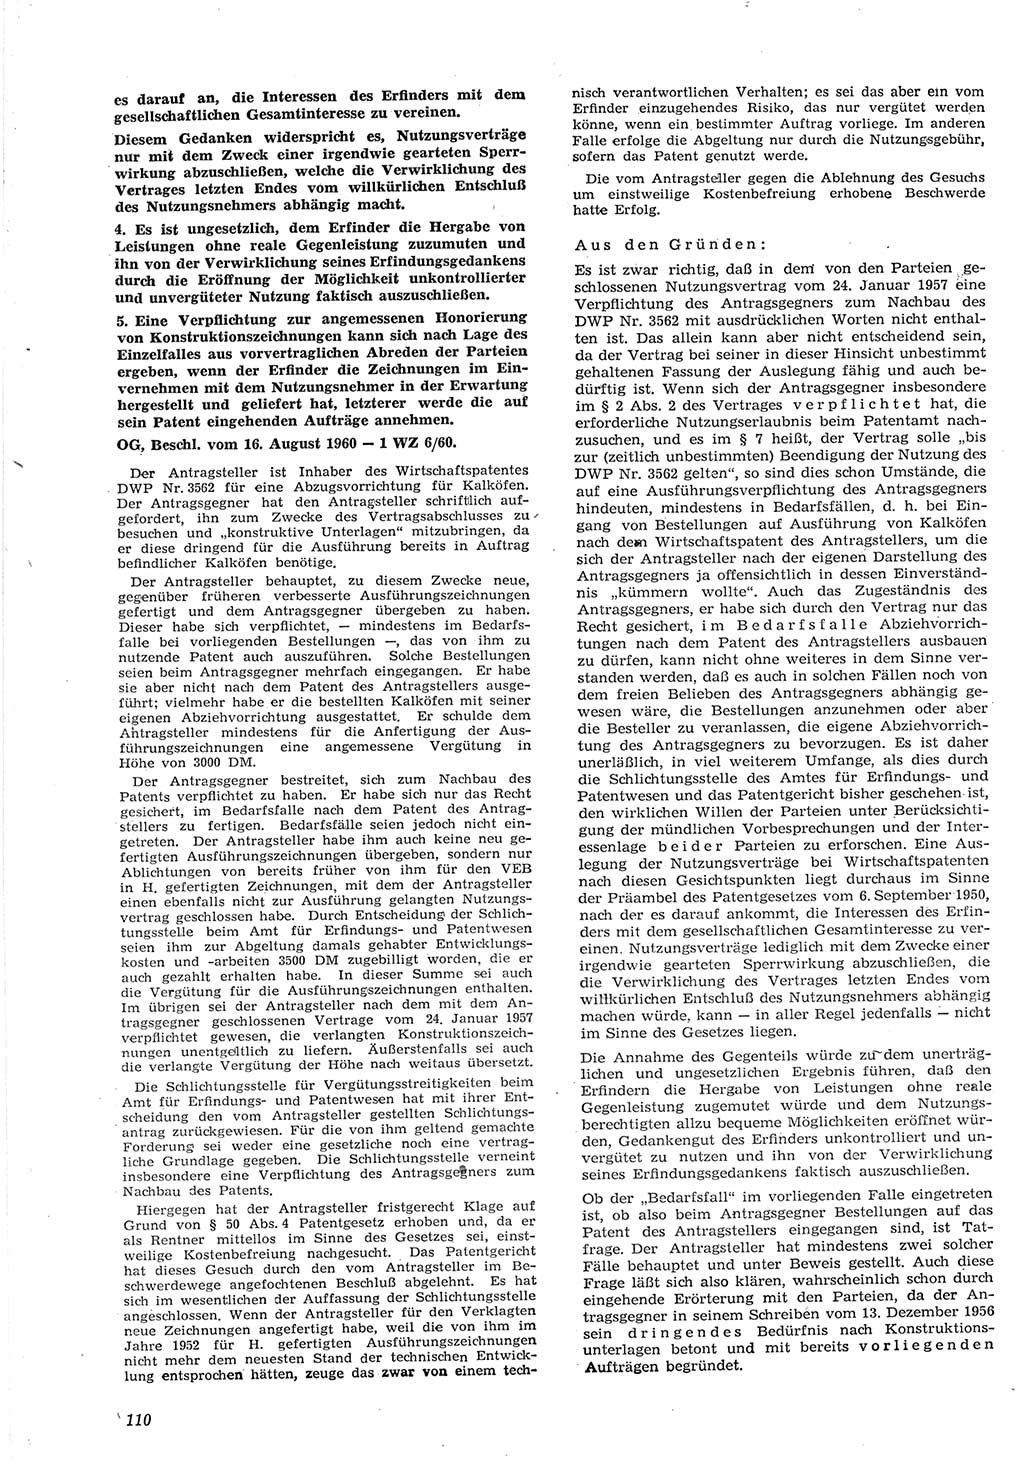 Neue Justiz (NJ), Zeitschrift für Recht und Rechtswissenschaft [Deutsche Demokratische Republik (DDR)], 15. Jahrgang 1961, Seite 110 (NJ DDR 1961, S. 110)